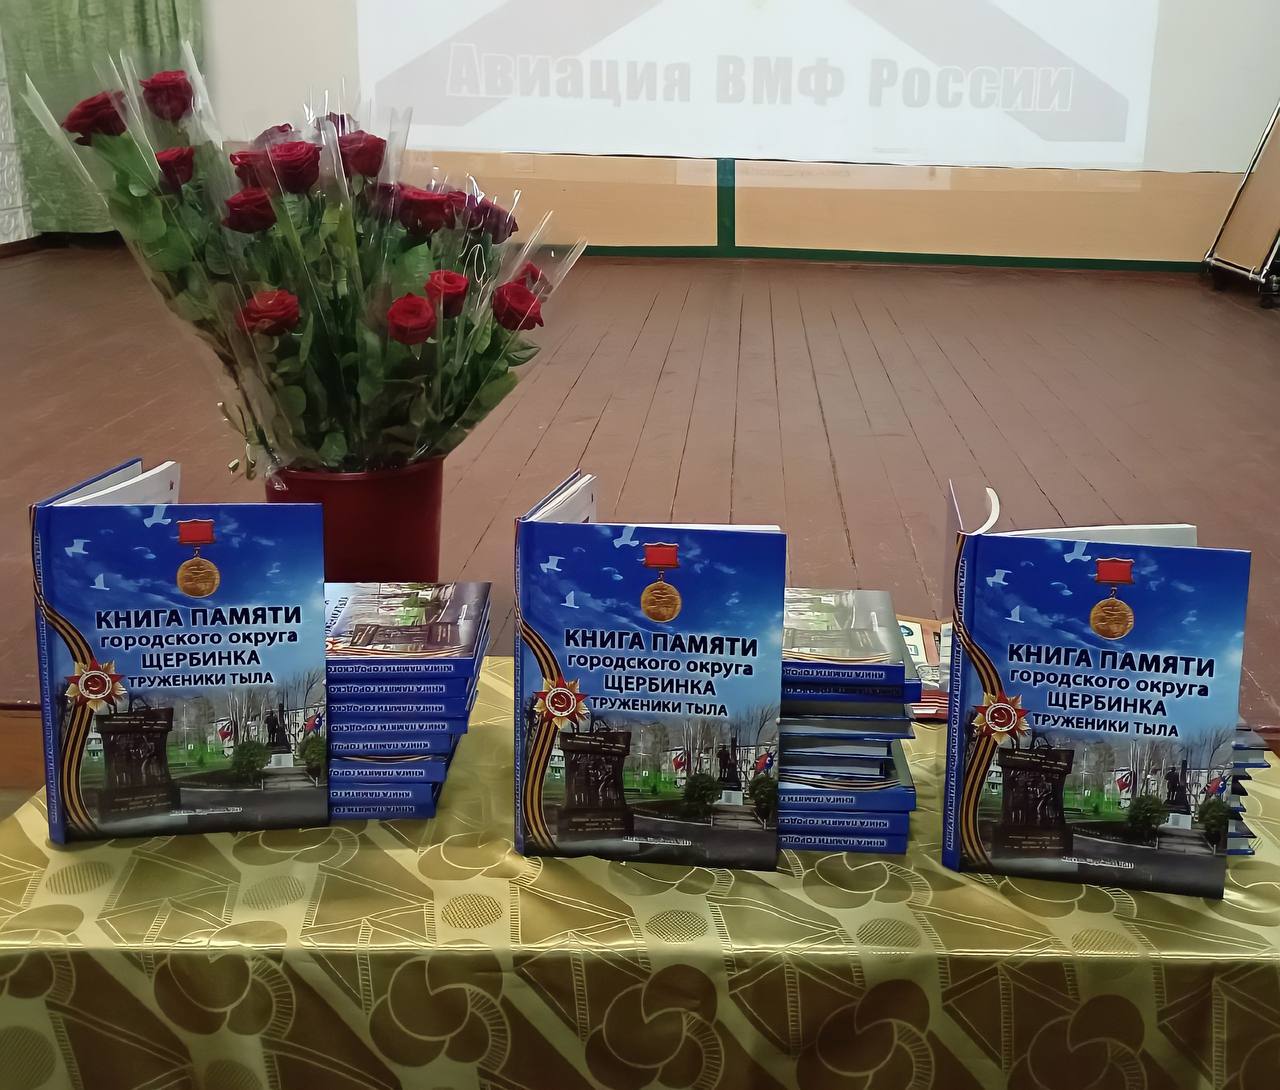 Церемония вручения книг Памяти состоялась в Щербинке